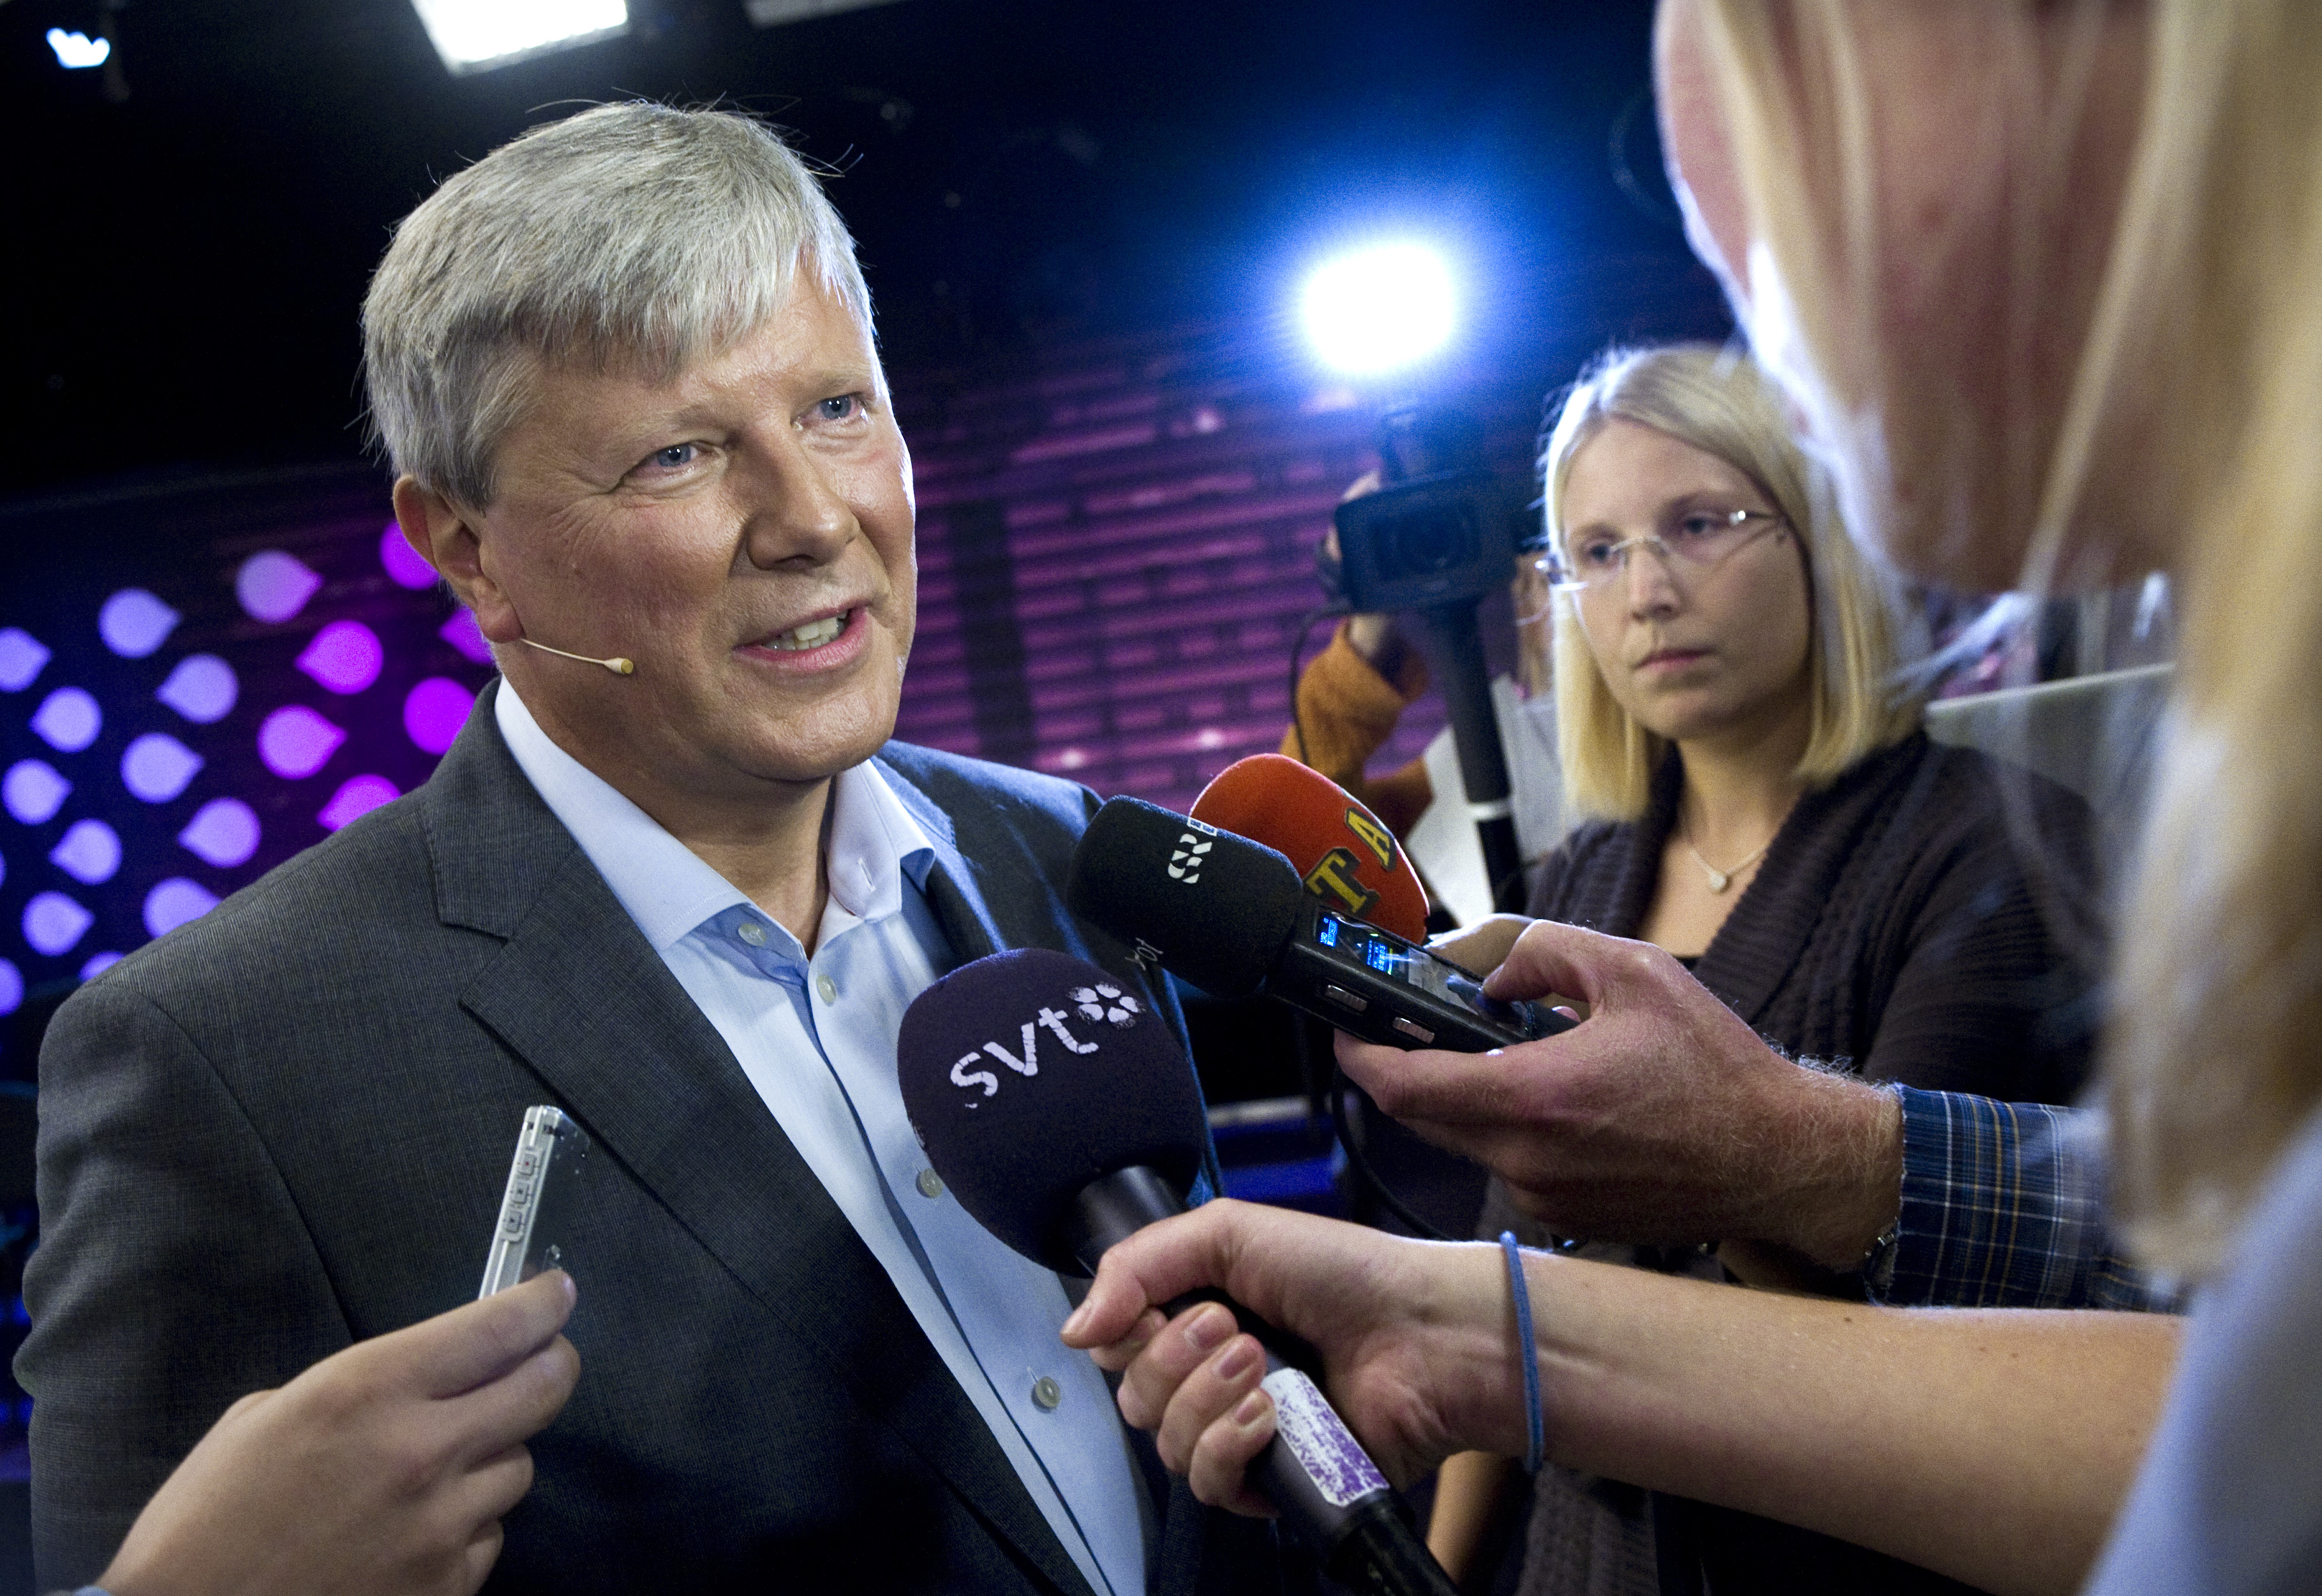 Riksdagsvalet 2010, Göran Hägglund, lars ohly, Kristdemokraterna, vänsterpartiet